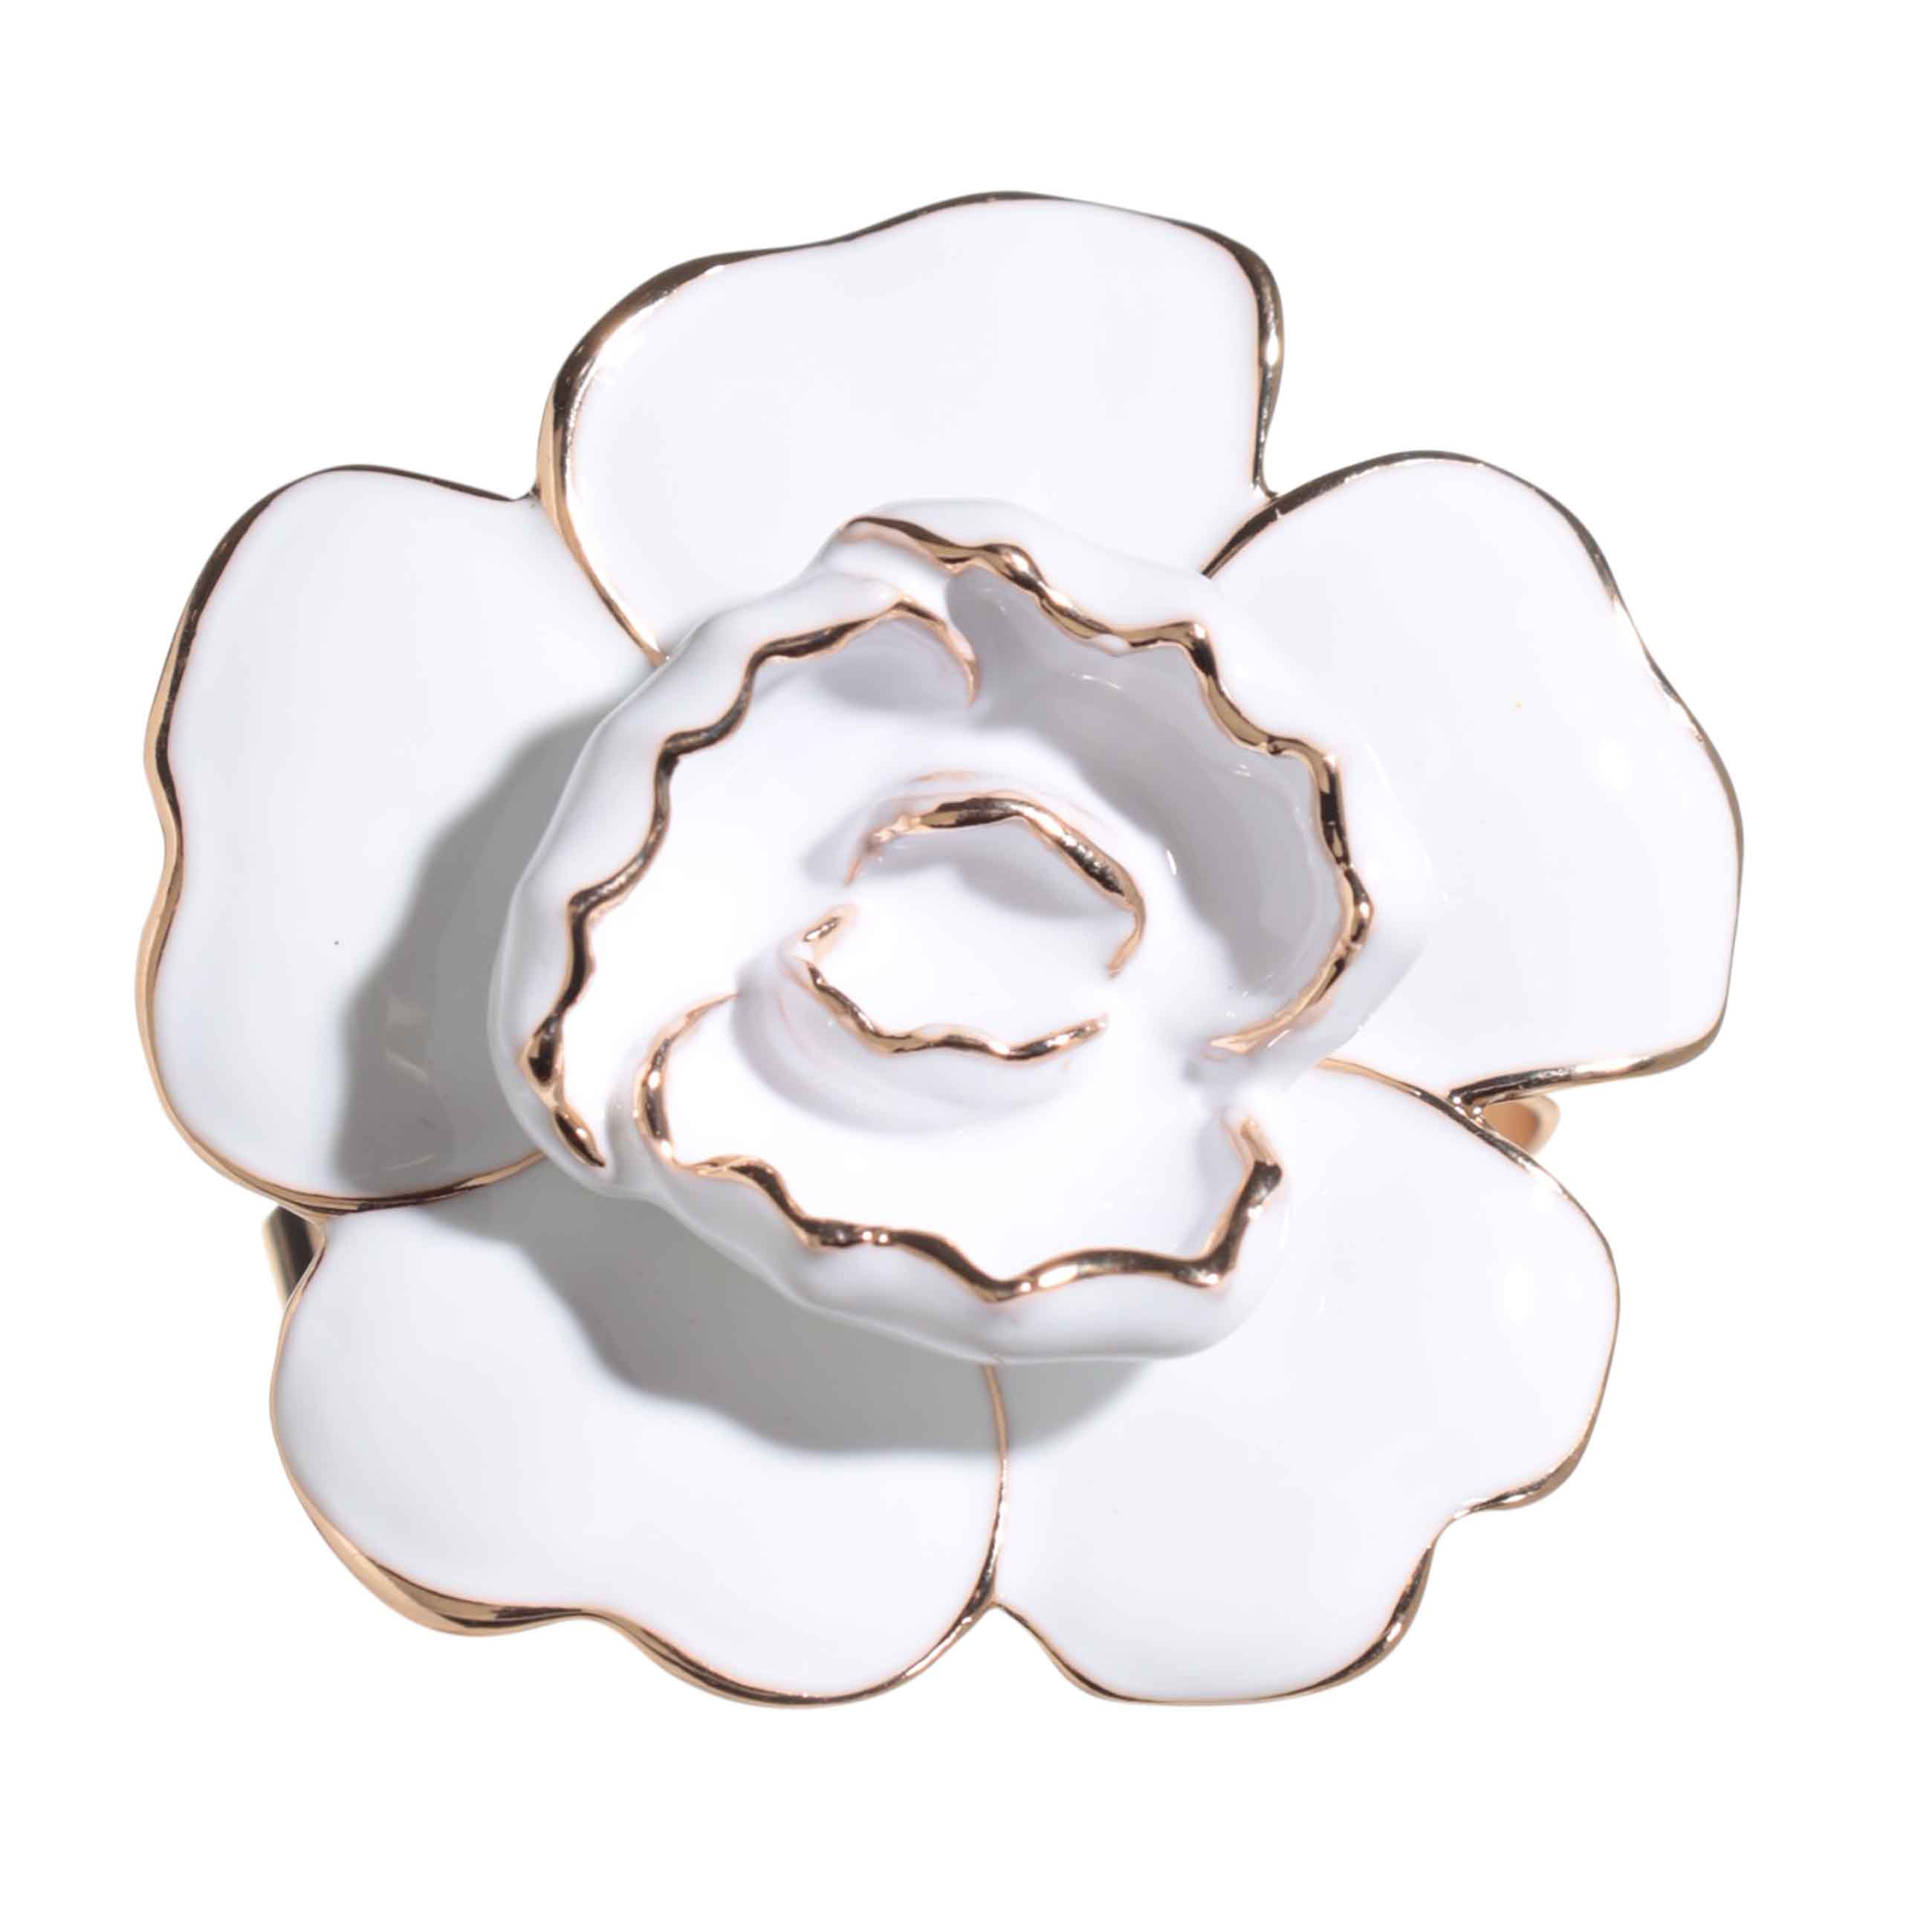 Кольцо для салфеток, 5 см, металл, бело-золотистое, Цветок магнолии, Magnolia изображение № 2